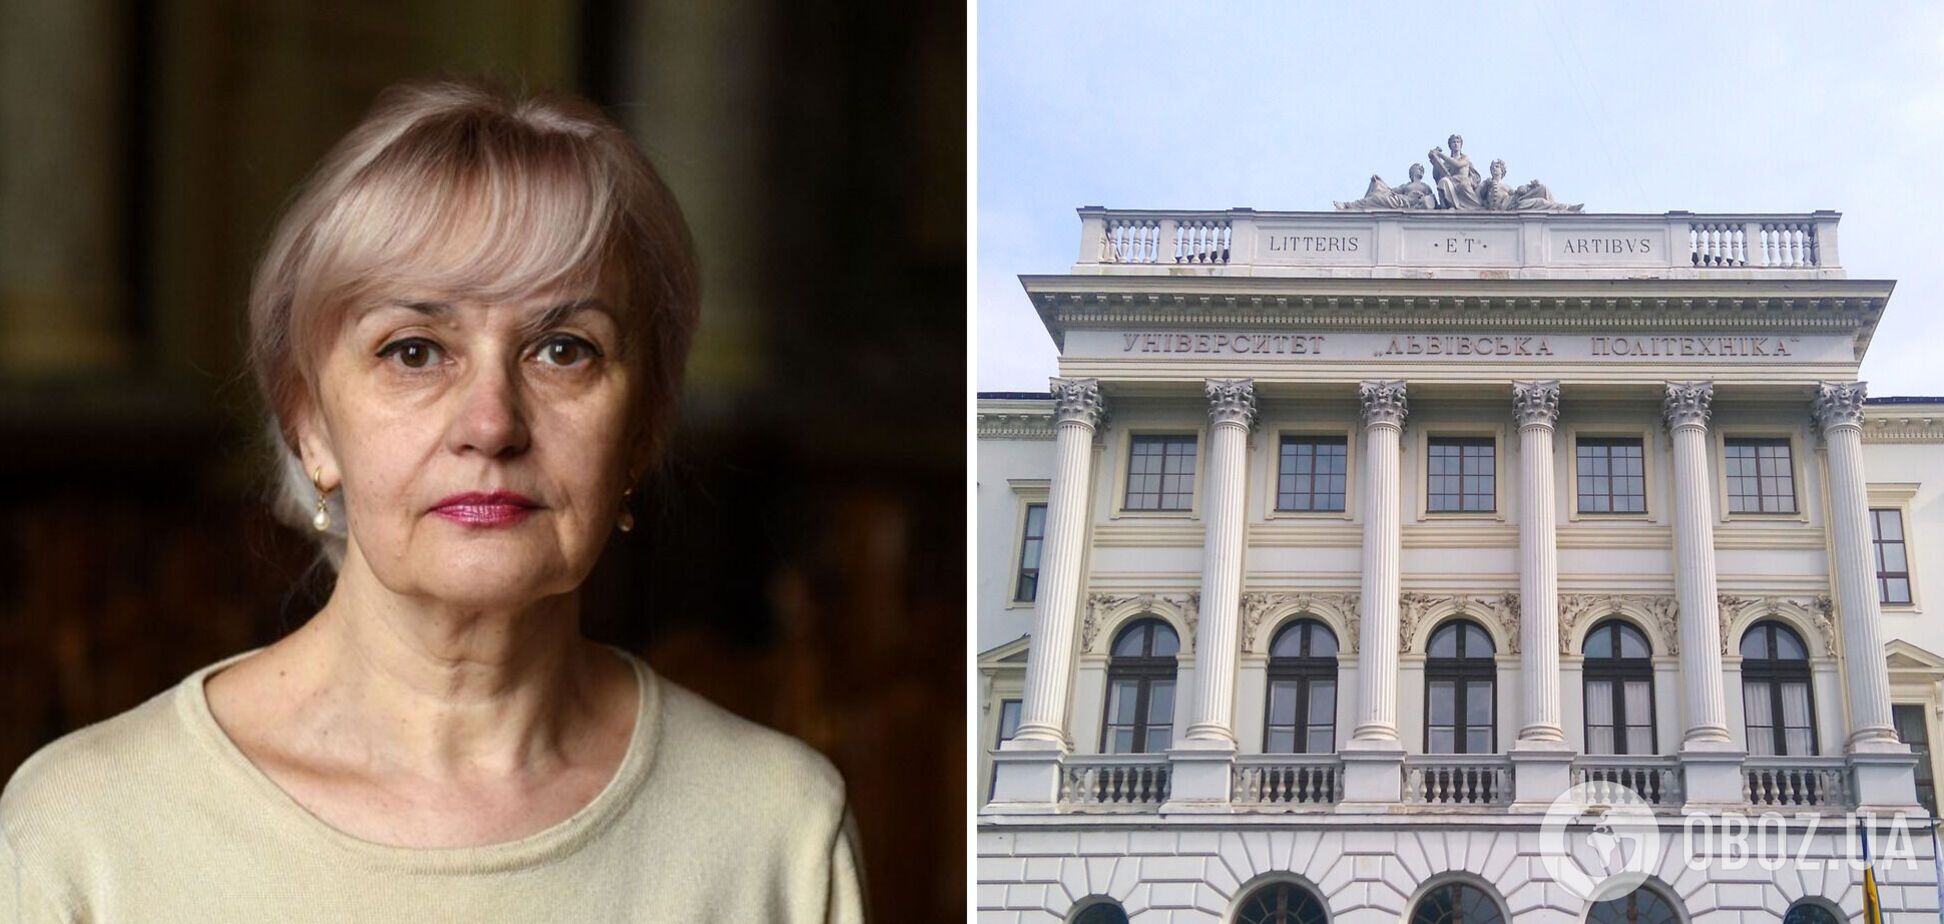 Львівська політехніка видалила повідомлення про звільнення Ірини Фаріон: від коментарів відмовляються 